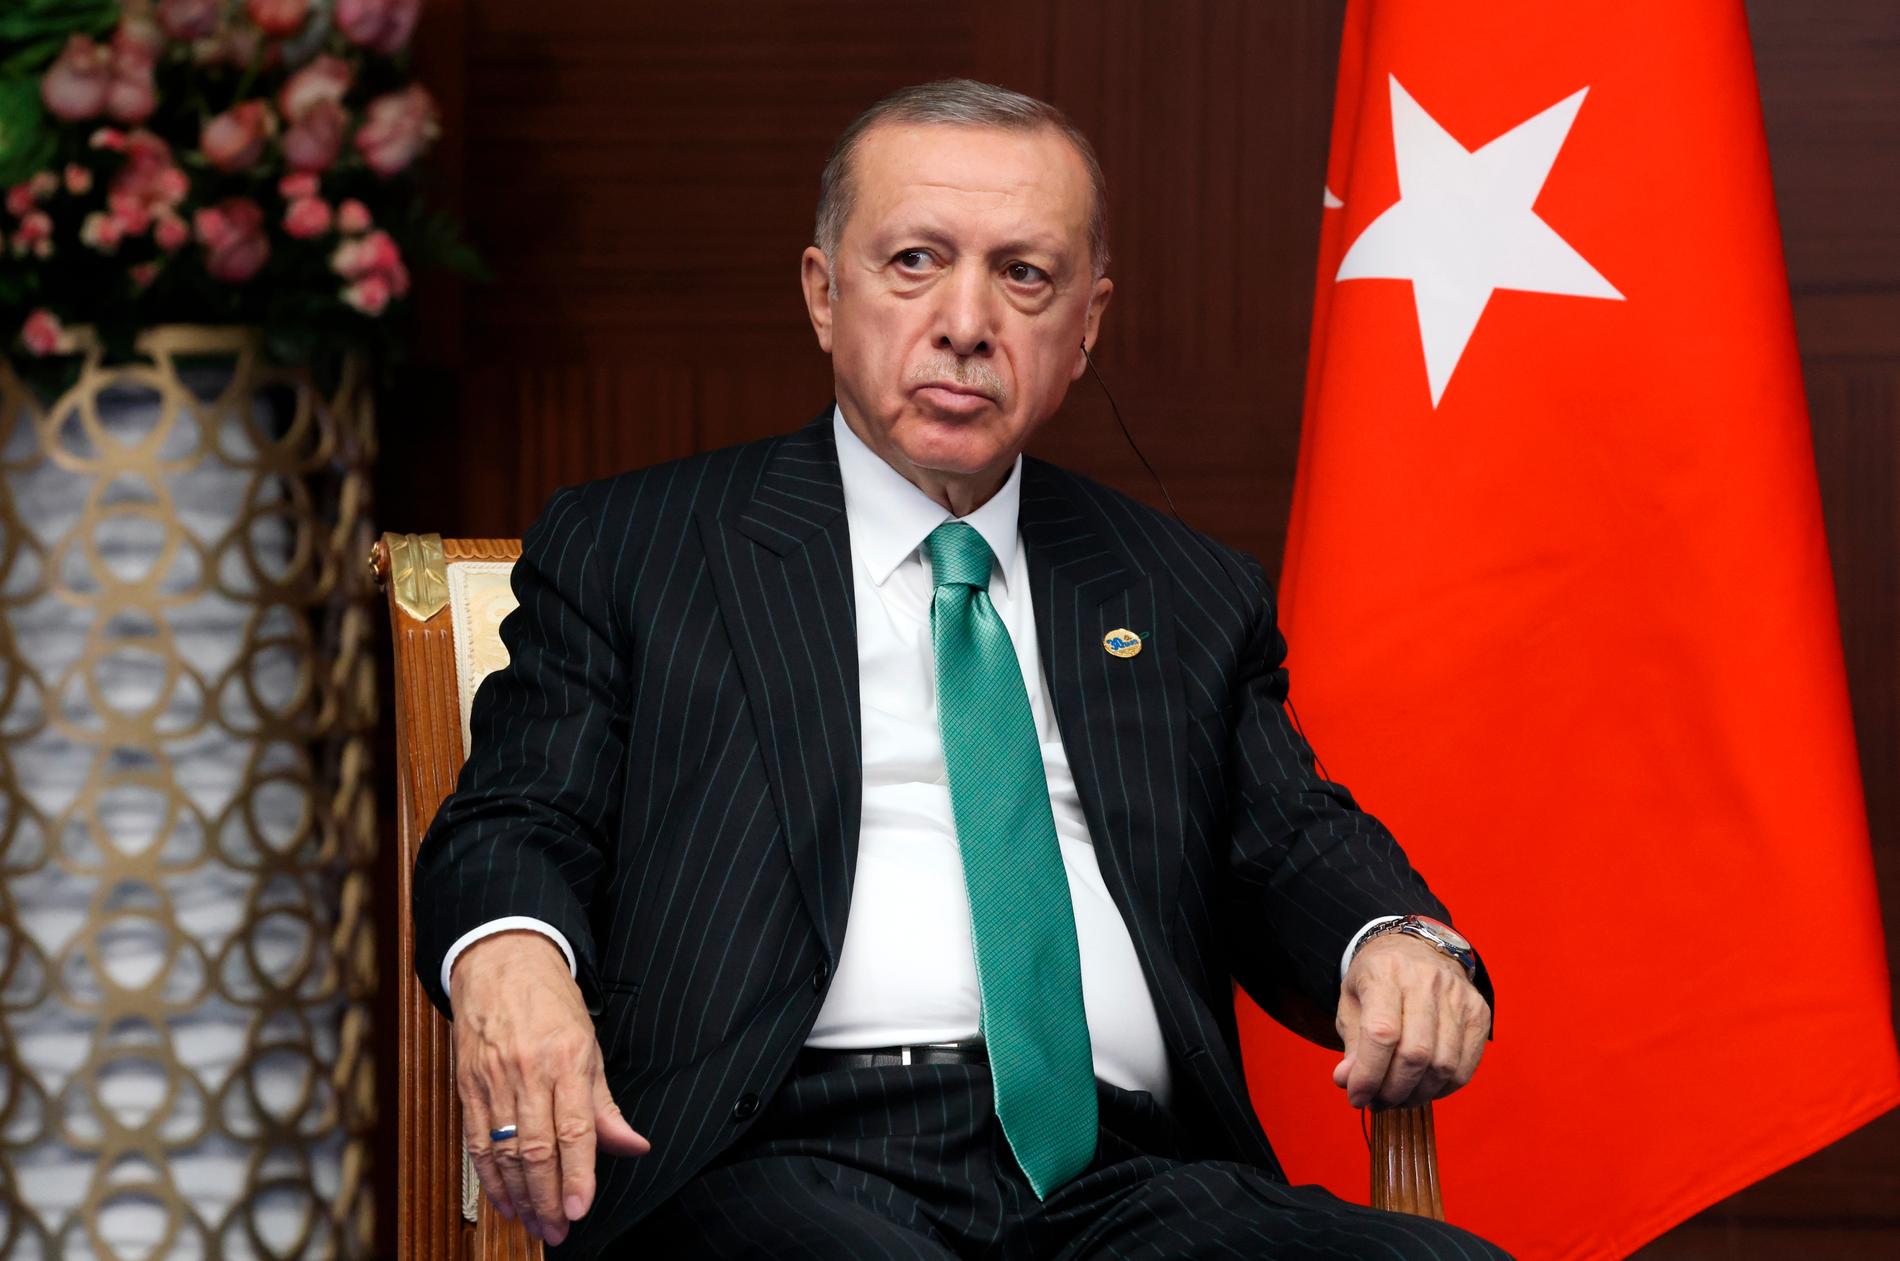 Turkiets president Recep Tayyip Erdogan har utlyst undantagstillstånd i landet efter jordbävningen.